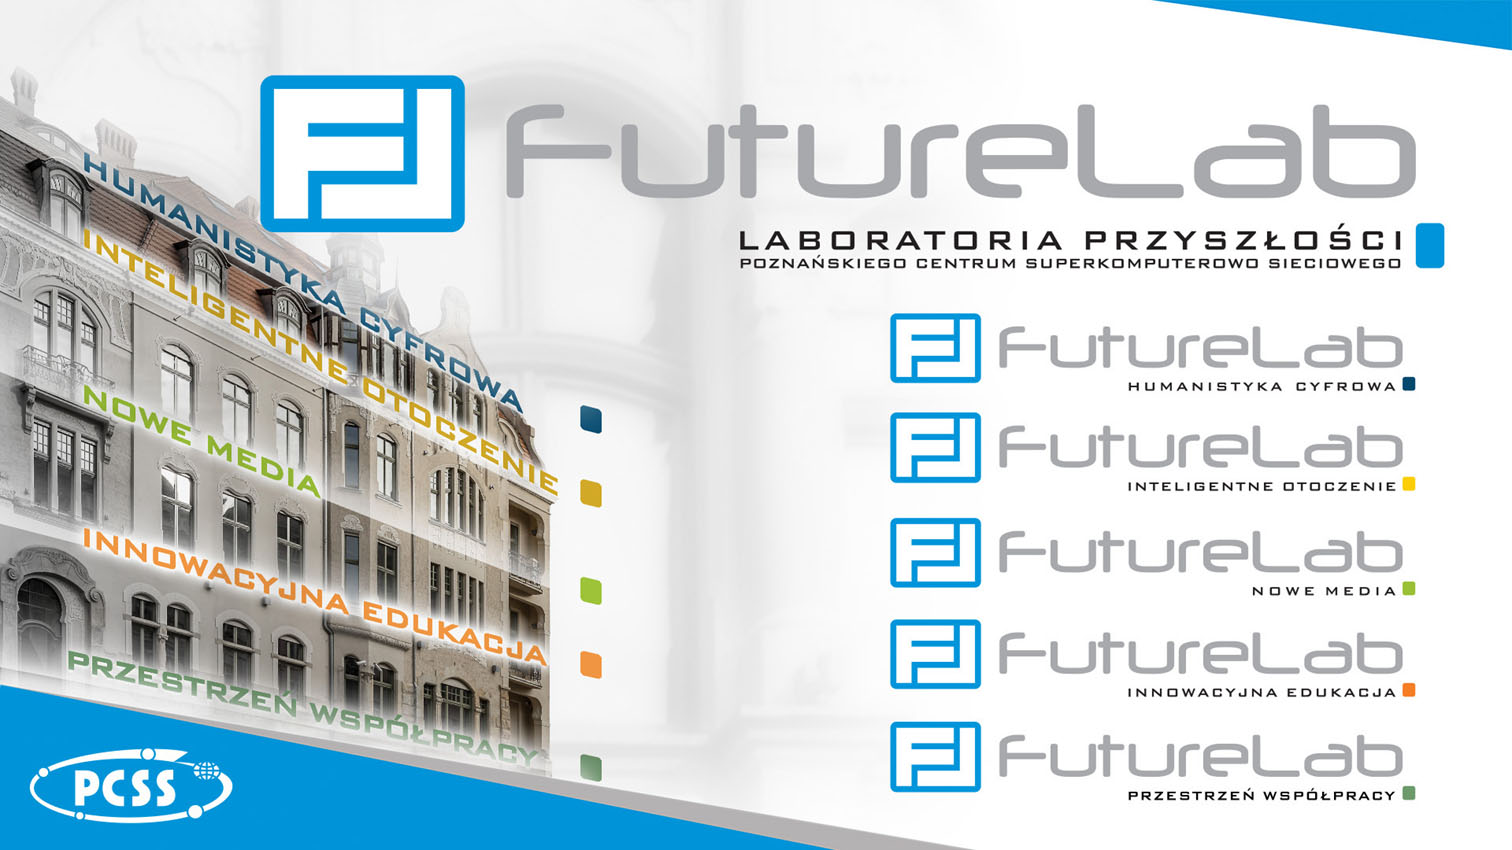 Zapraszamy do FutureLab – nowo otwartej Inteligentnej Przestrzeni Laboratoriów Przyszłości PCSS